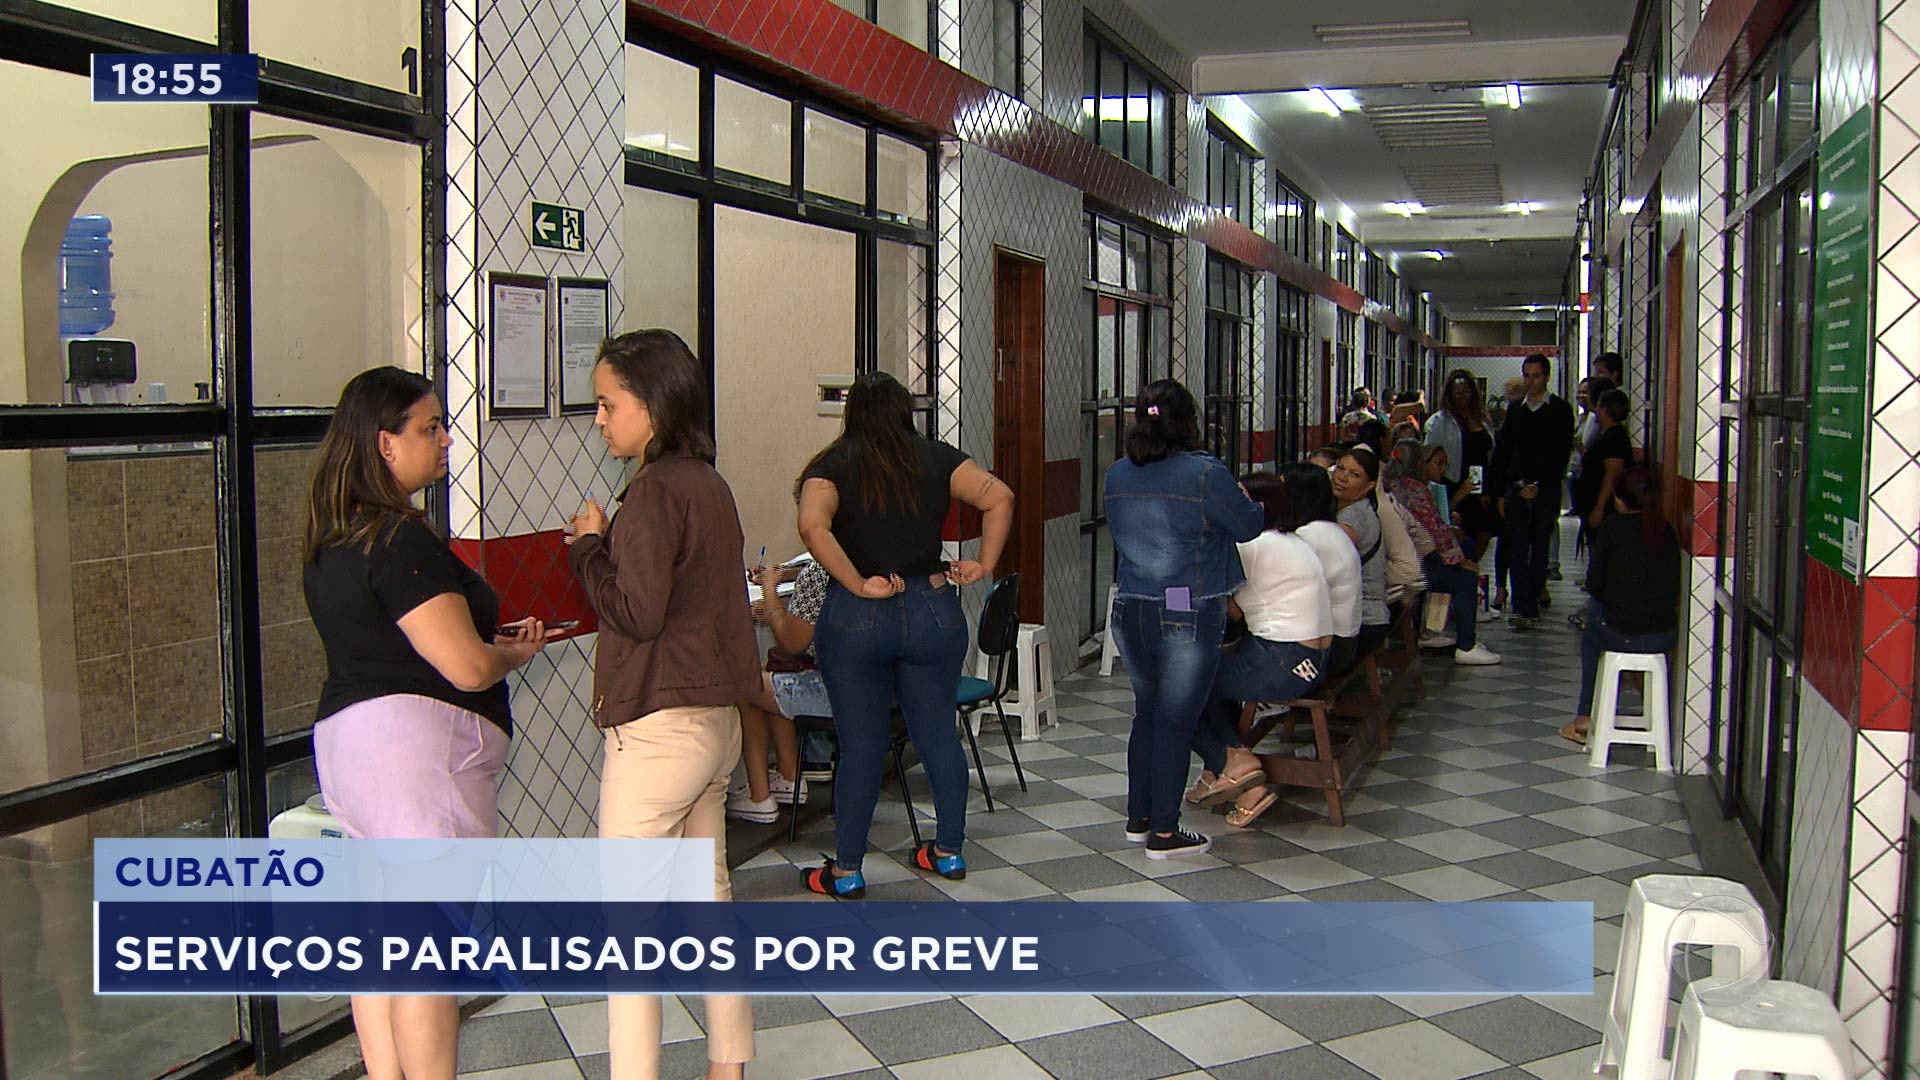 Vídeo: Estudantes de Cubatão estão sem aulas há dois dias